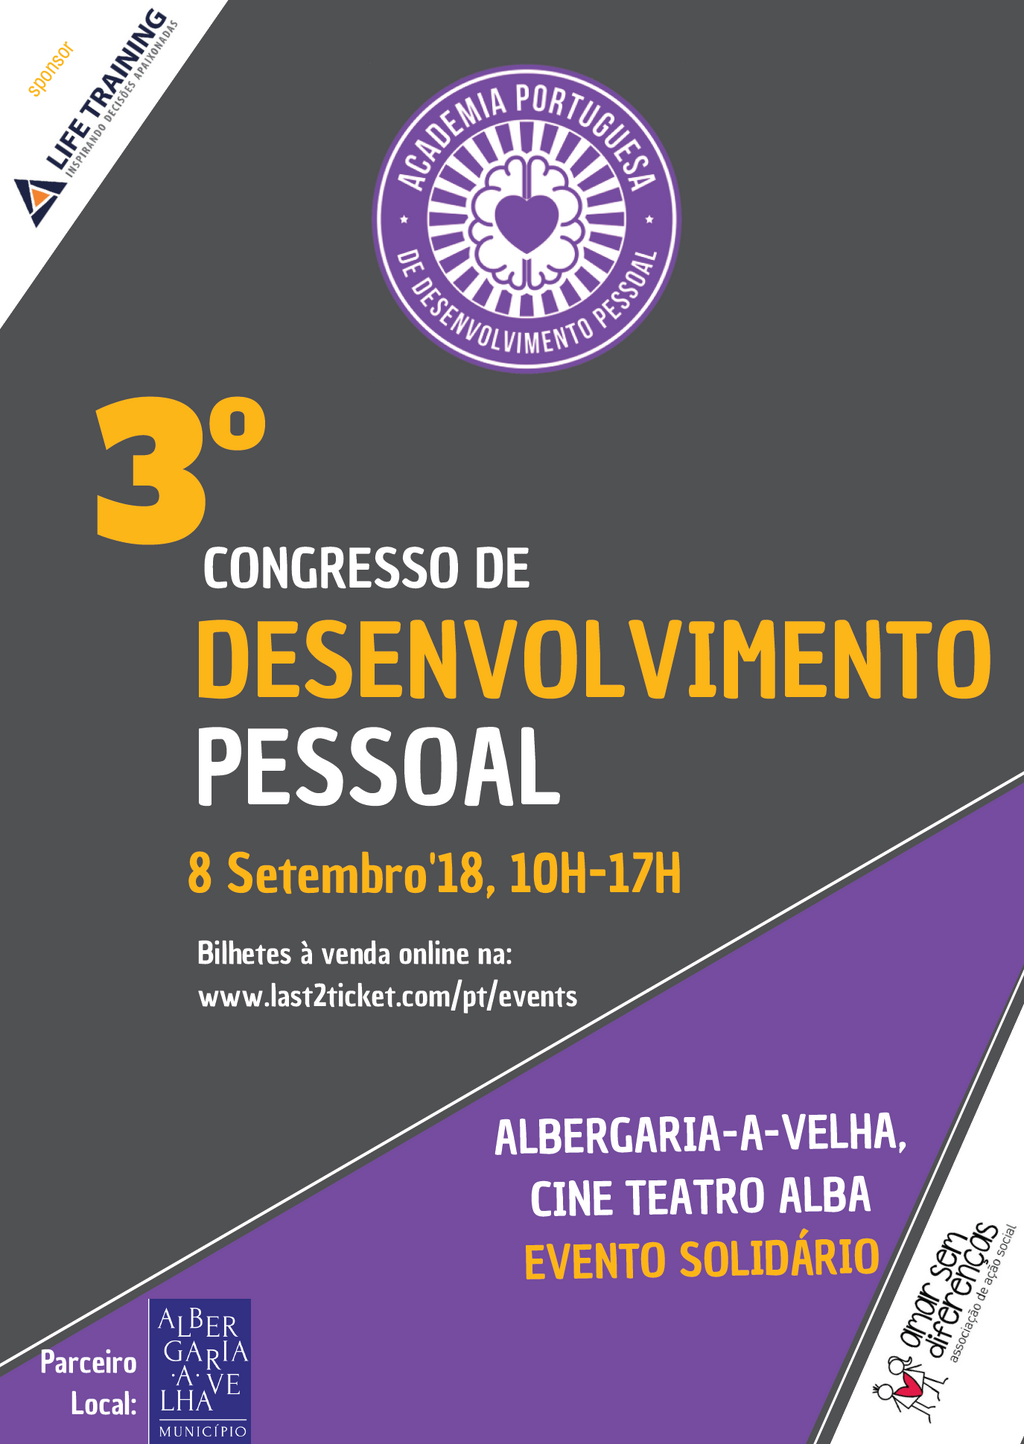 Cineteatro Alba recebe 3.º Congresso da Academia Portuguesa de Desenvolvimento Pessoal